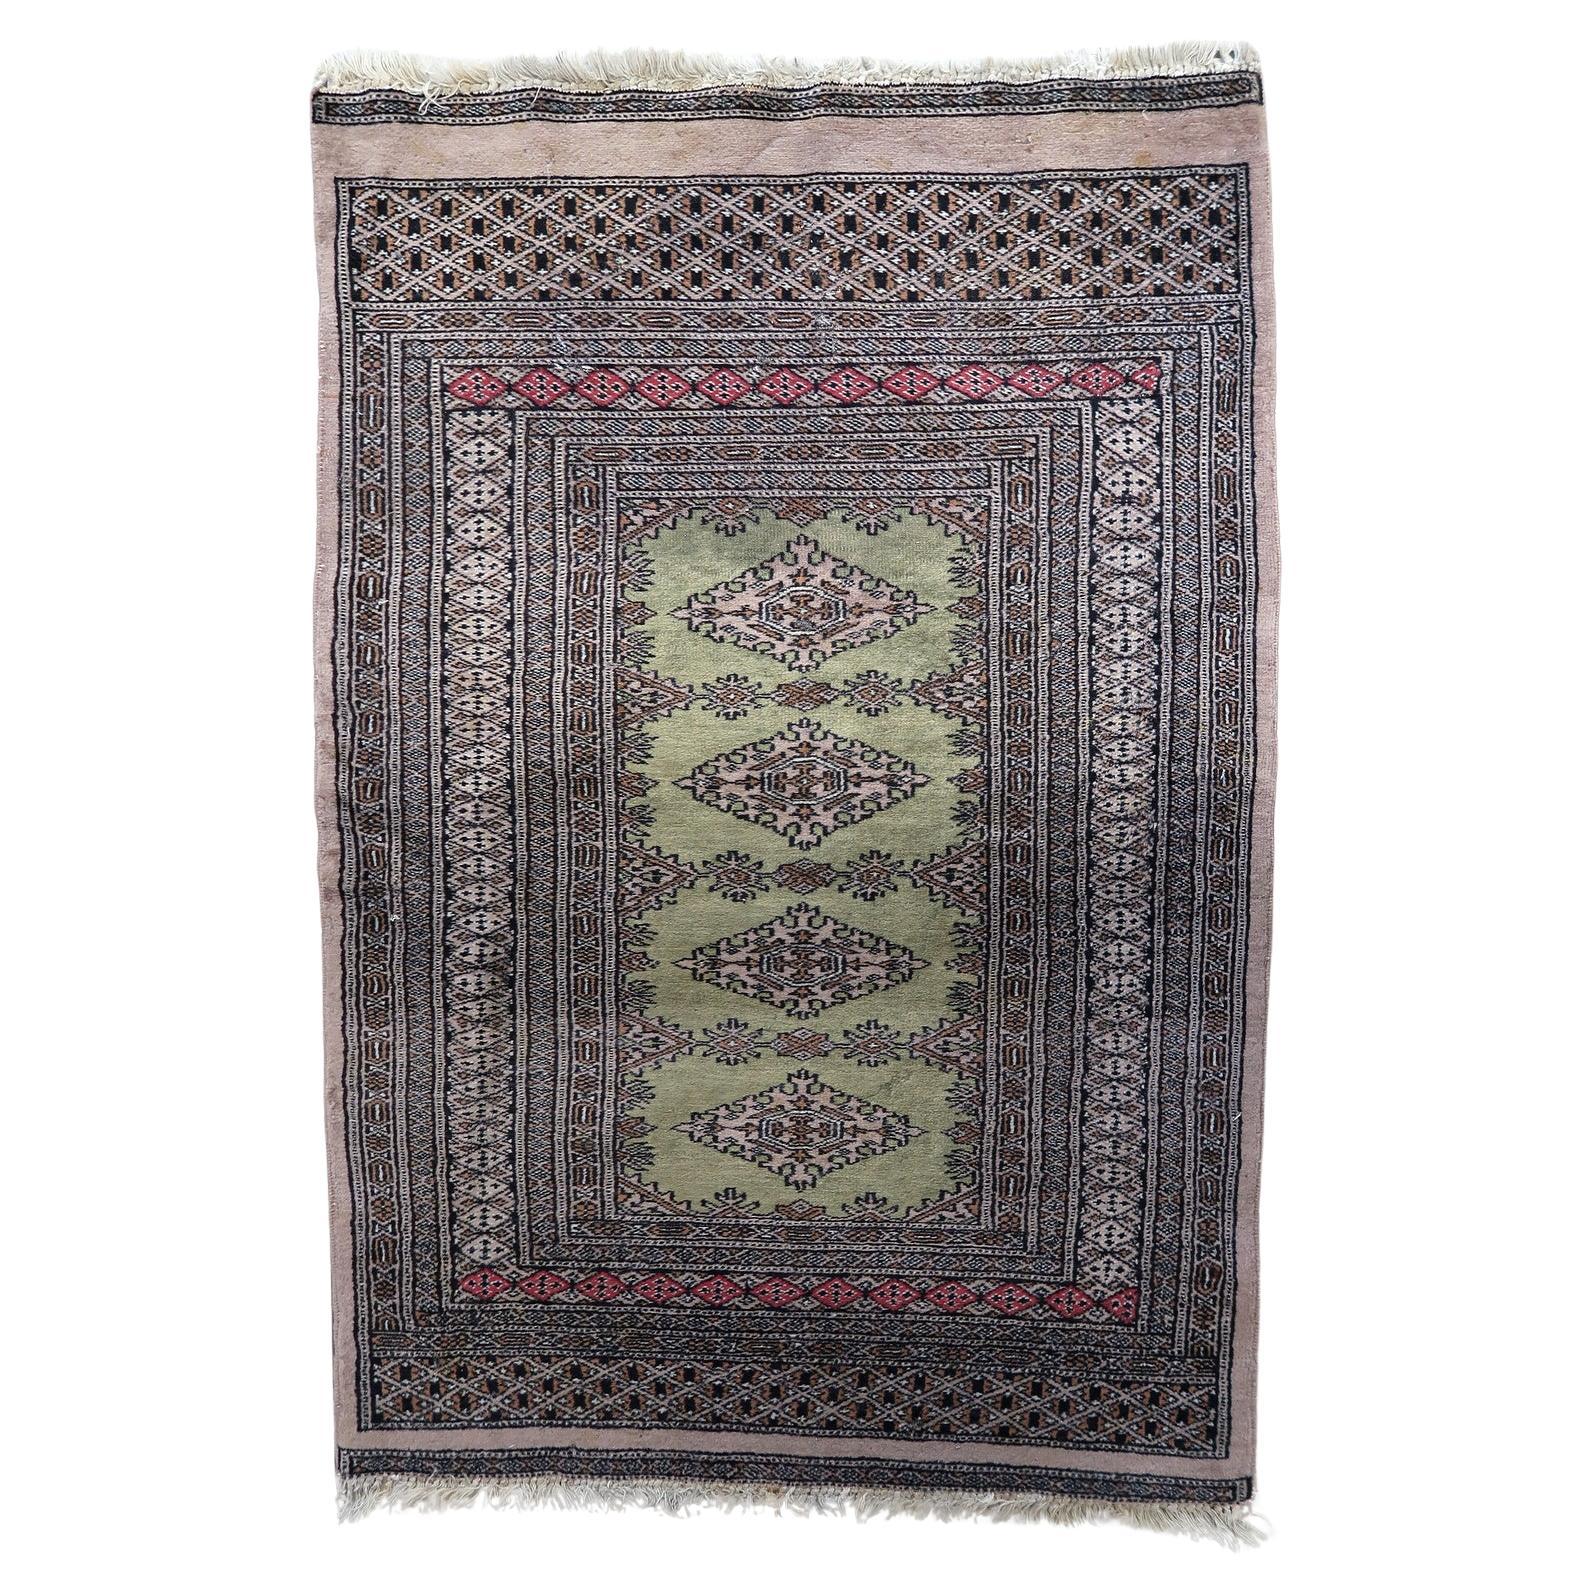 Handmade Vintage Uzbek Bukhara Rug 2.6' x 4', 1950s - 1C1145